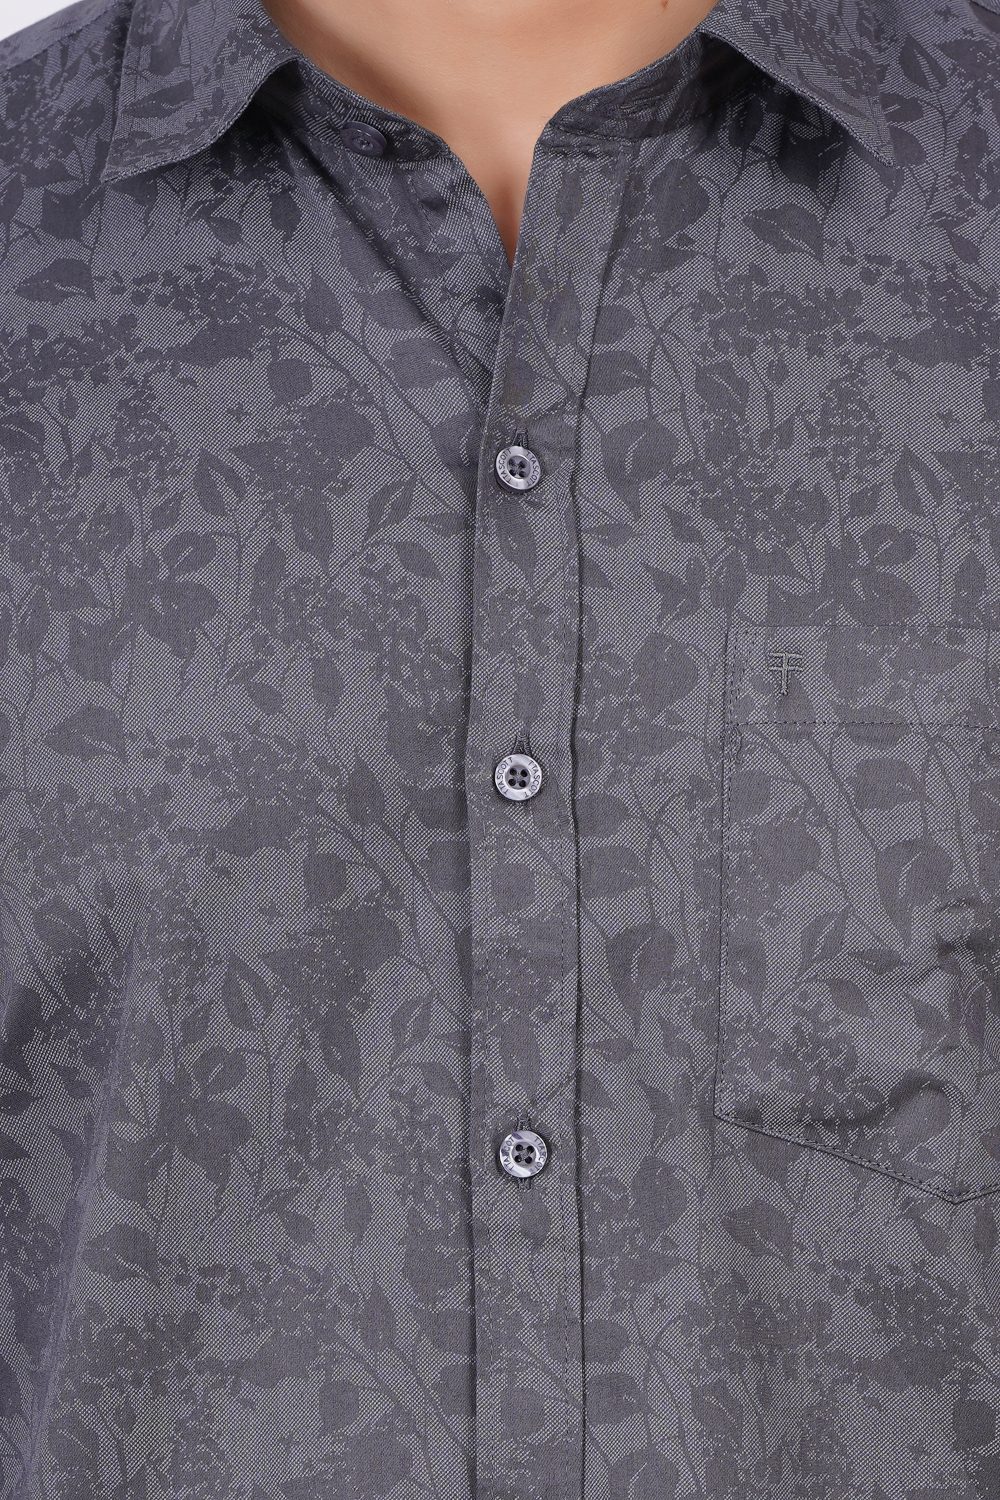 Grey | TTASCOTT Printed Shirt